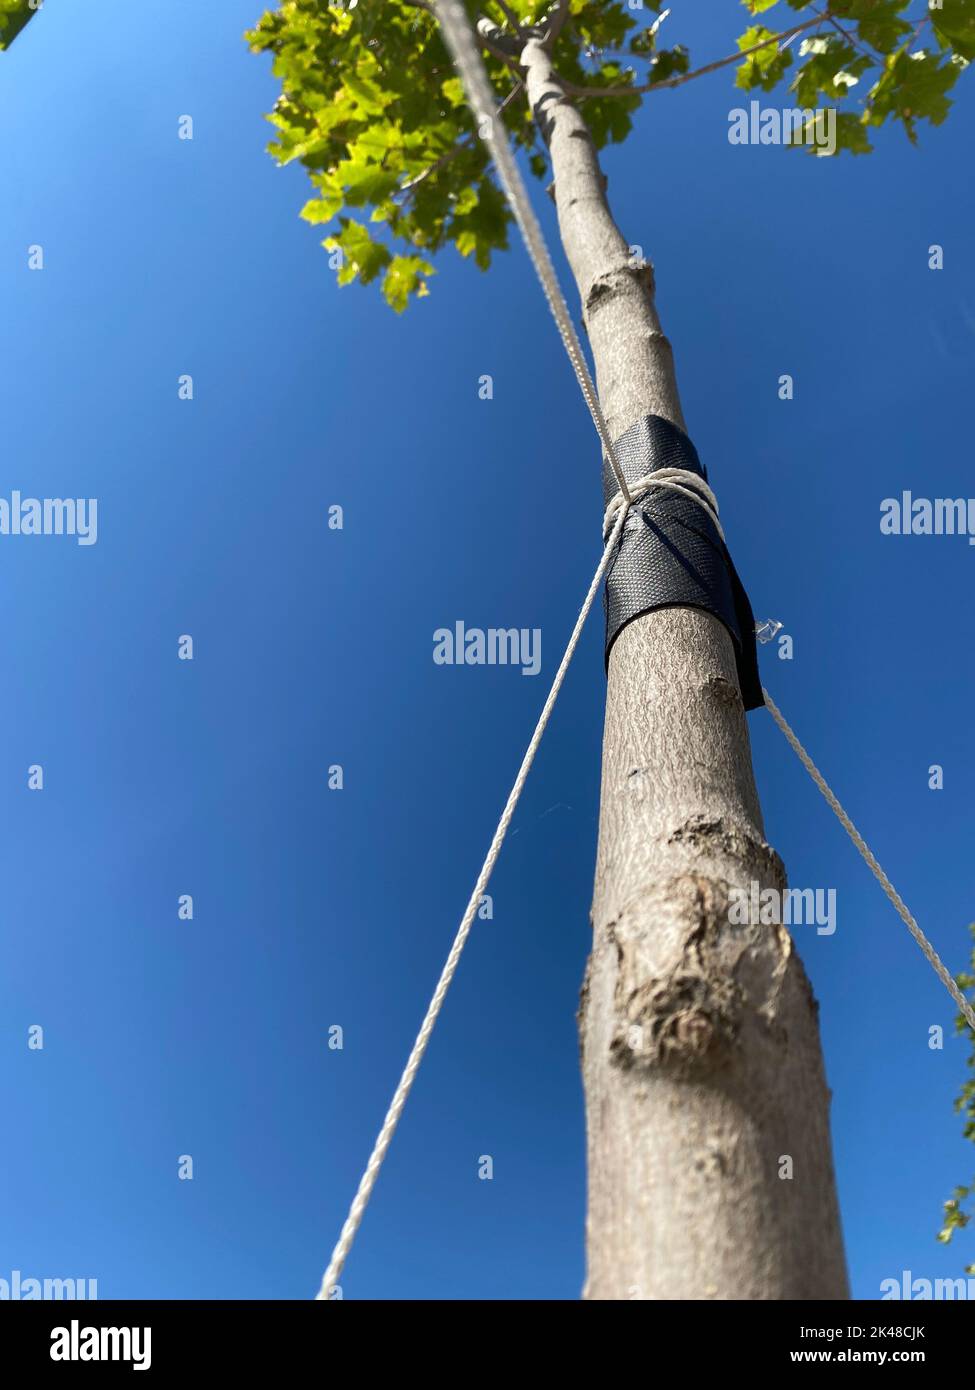 Strumpfband aus jungen Bäumen. Einen jungen Baum mit Seilen stärken. Zum Schutz vor Entwurzelung einen jungen Baum mit Garn umgaren. Ökologie, Wald, Stadtplan Stockfoto